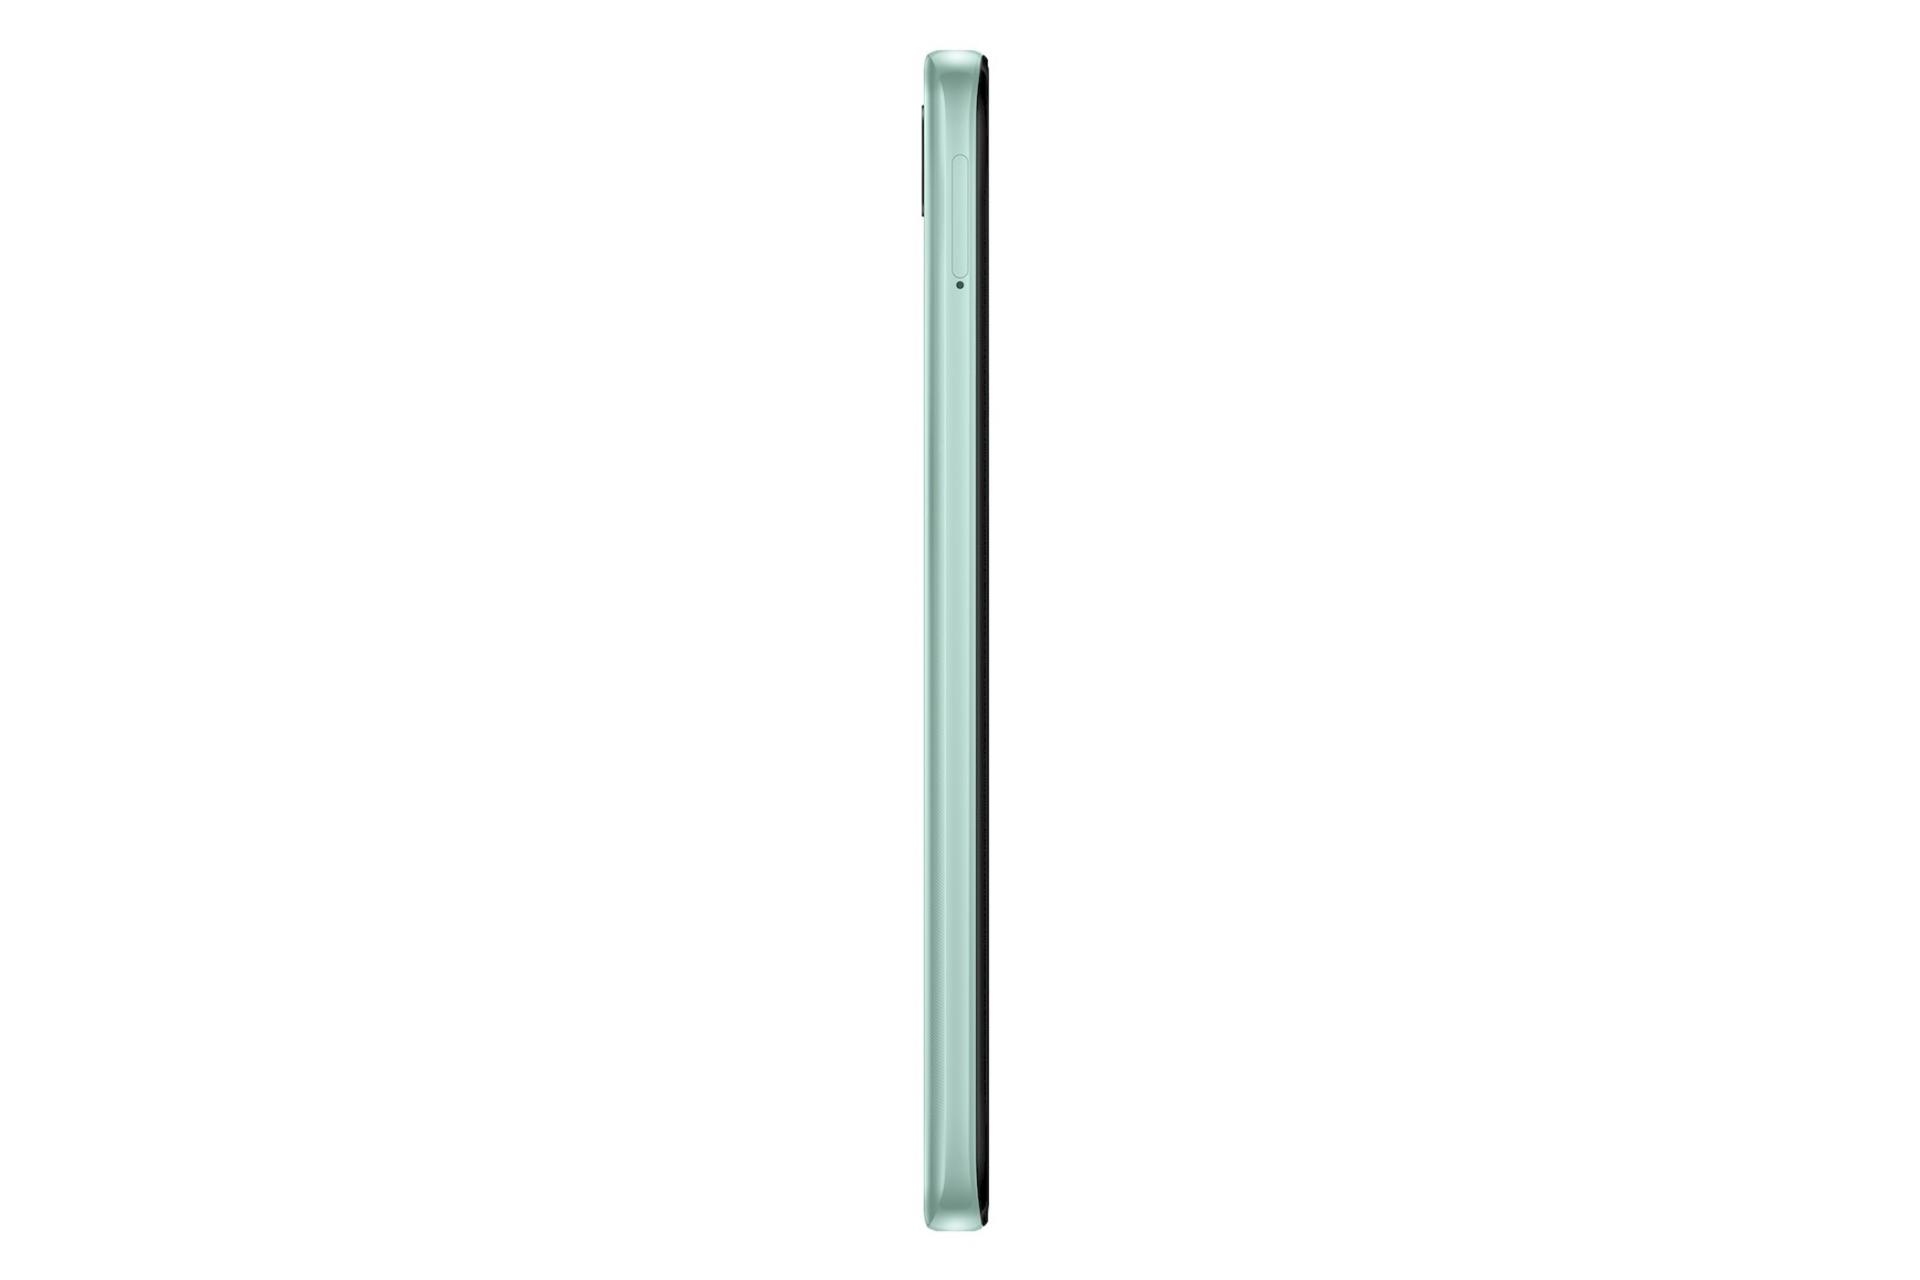 نمای جانبی گوشی موبایل گلکسی A04 Core سامسونگ / Samsung Galaxy A04 Core سبز